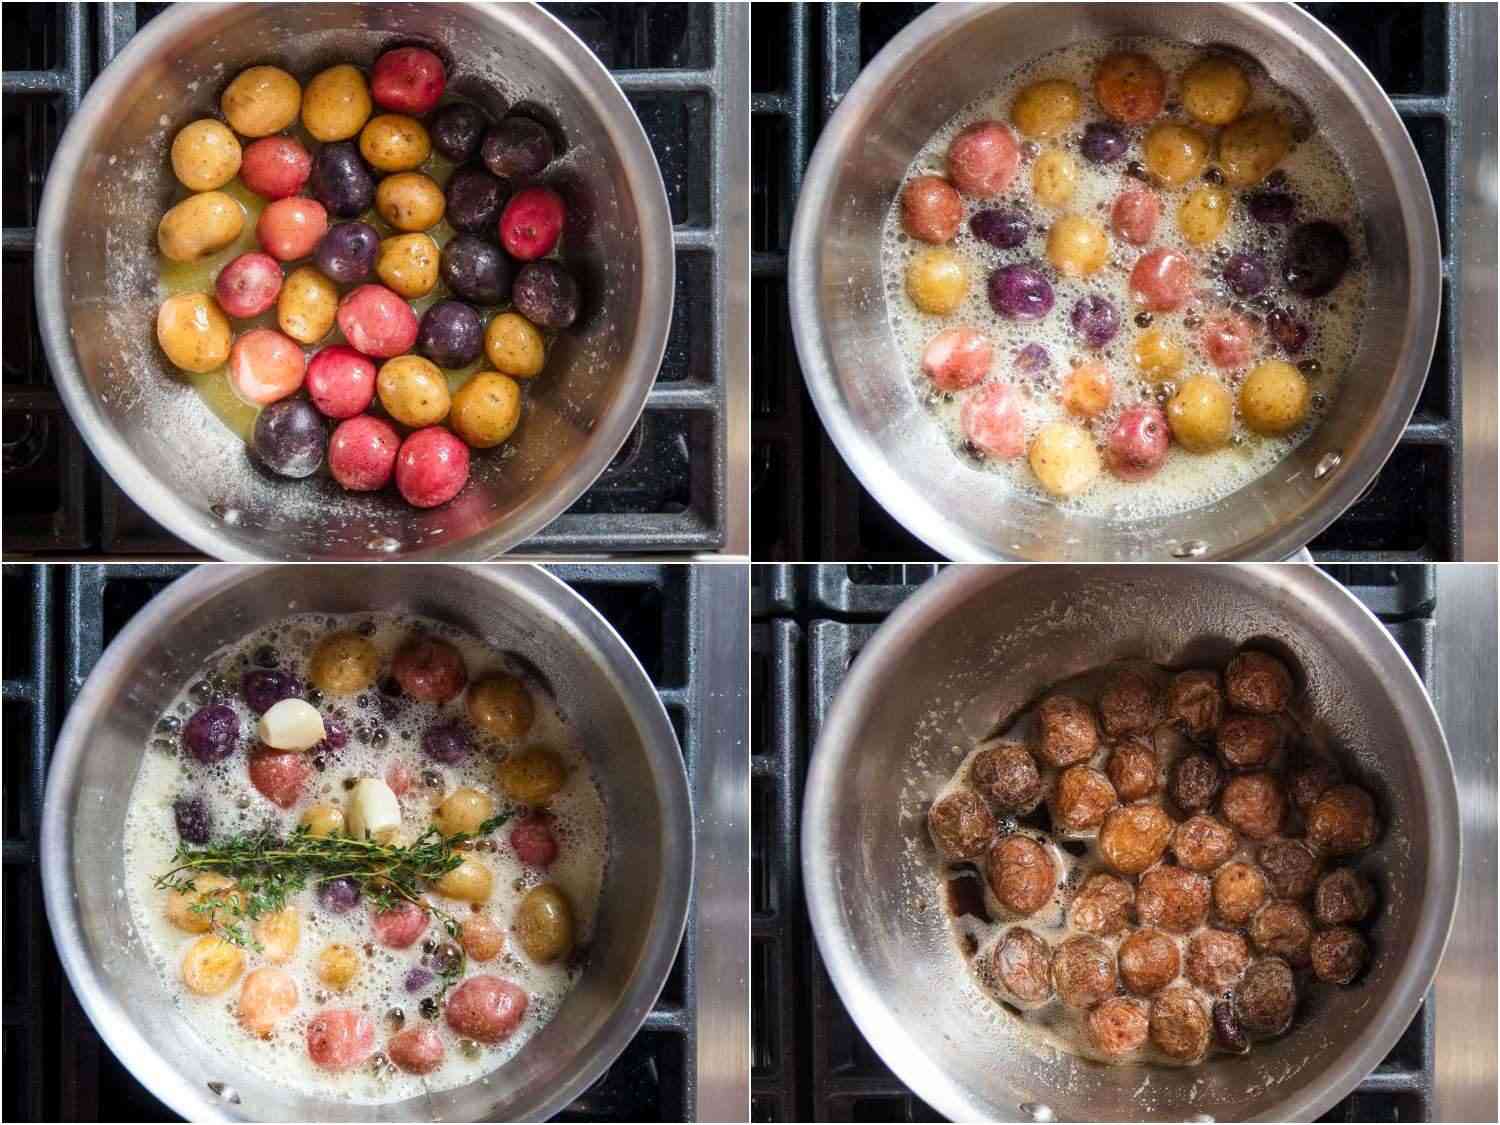 在炉子上用黄油烹饪新土豆的过程镜头。gydF4y2Ba